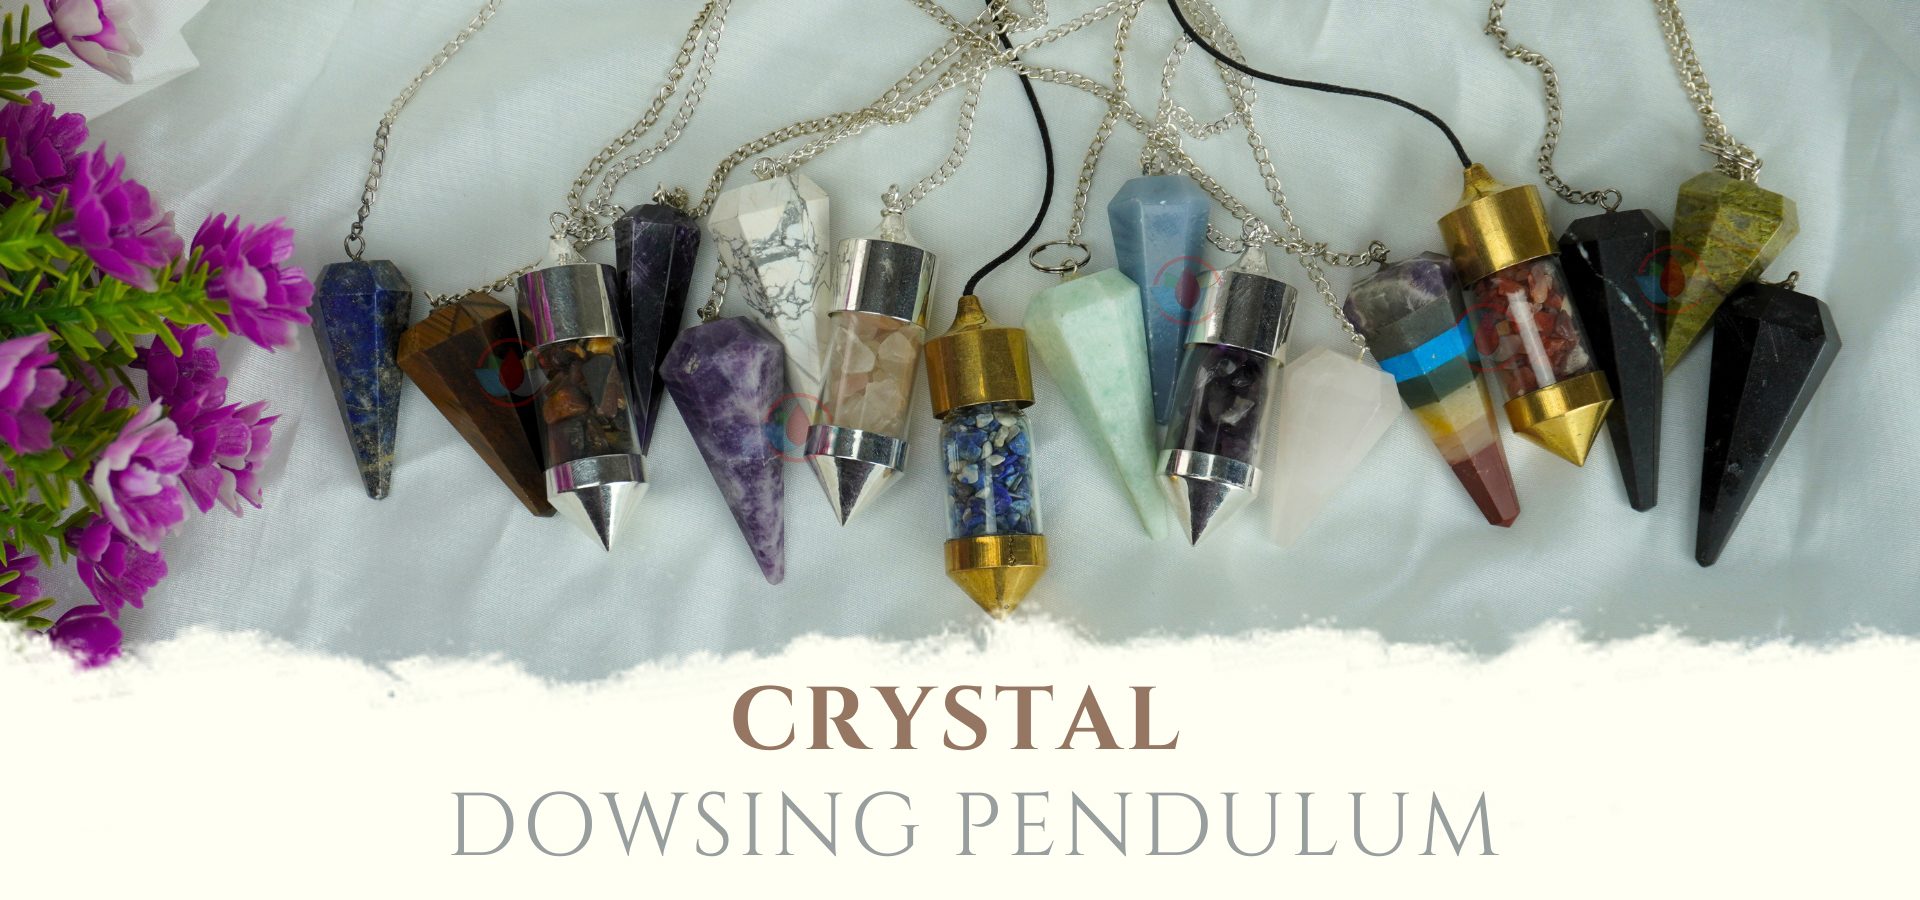 Dowsing Pendulum